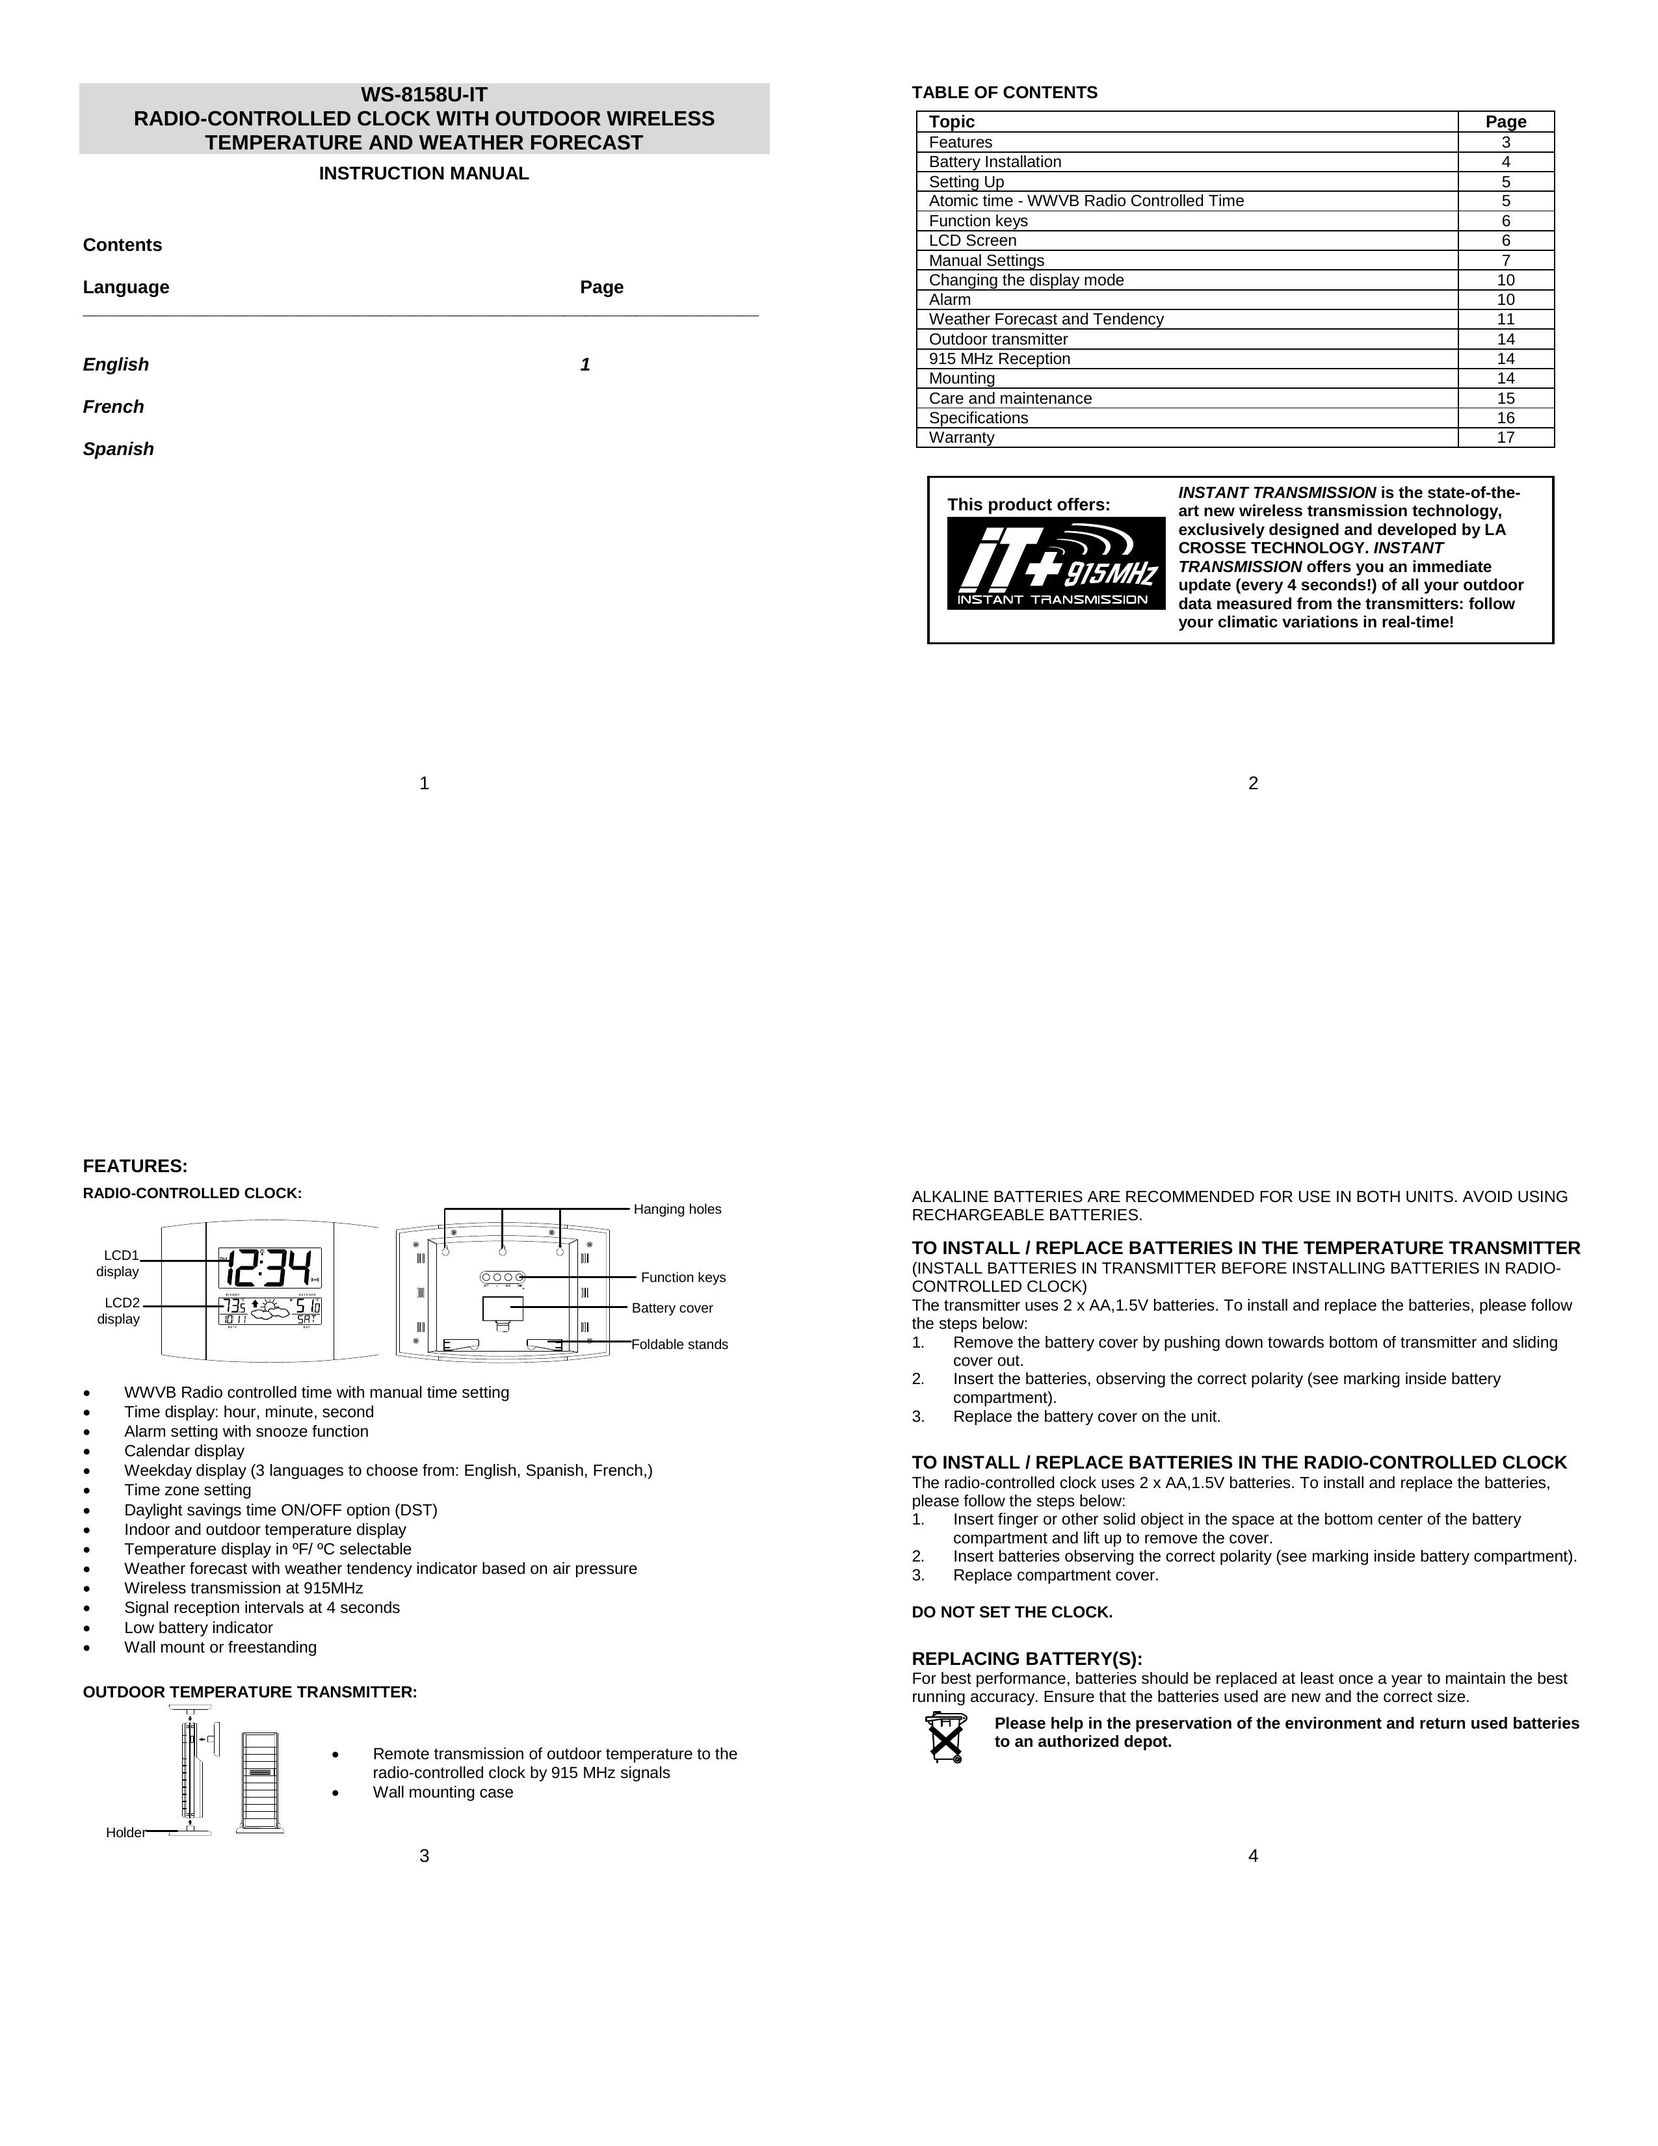 La Crosse Technology WS-8158U-IT Clock User Manual